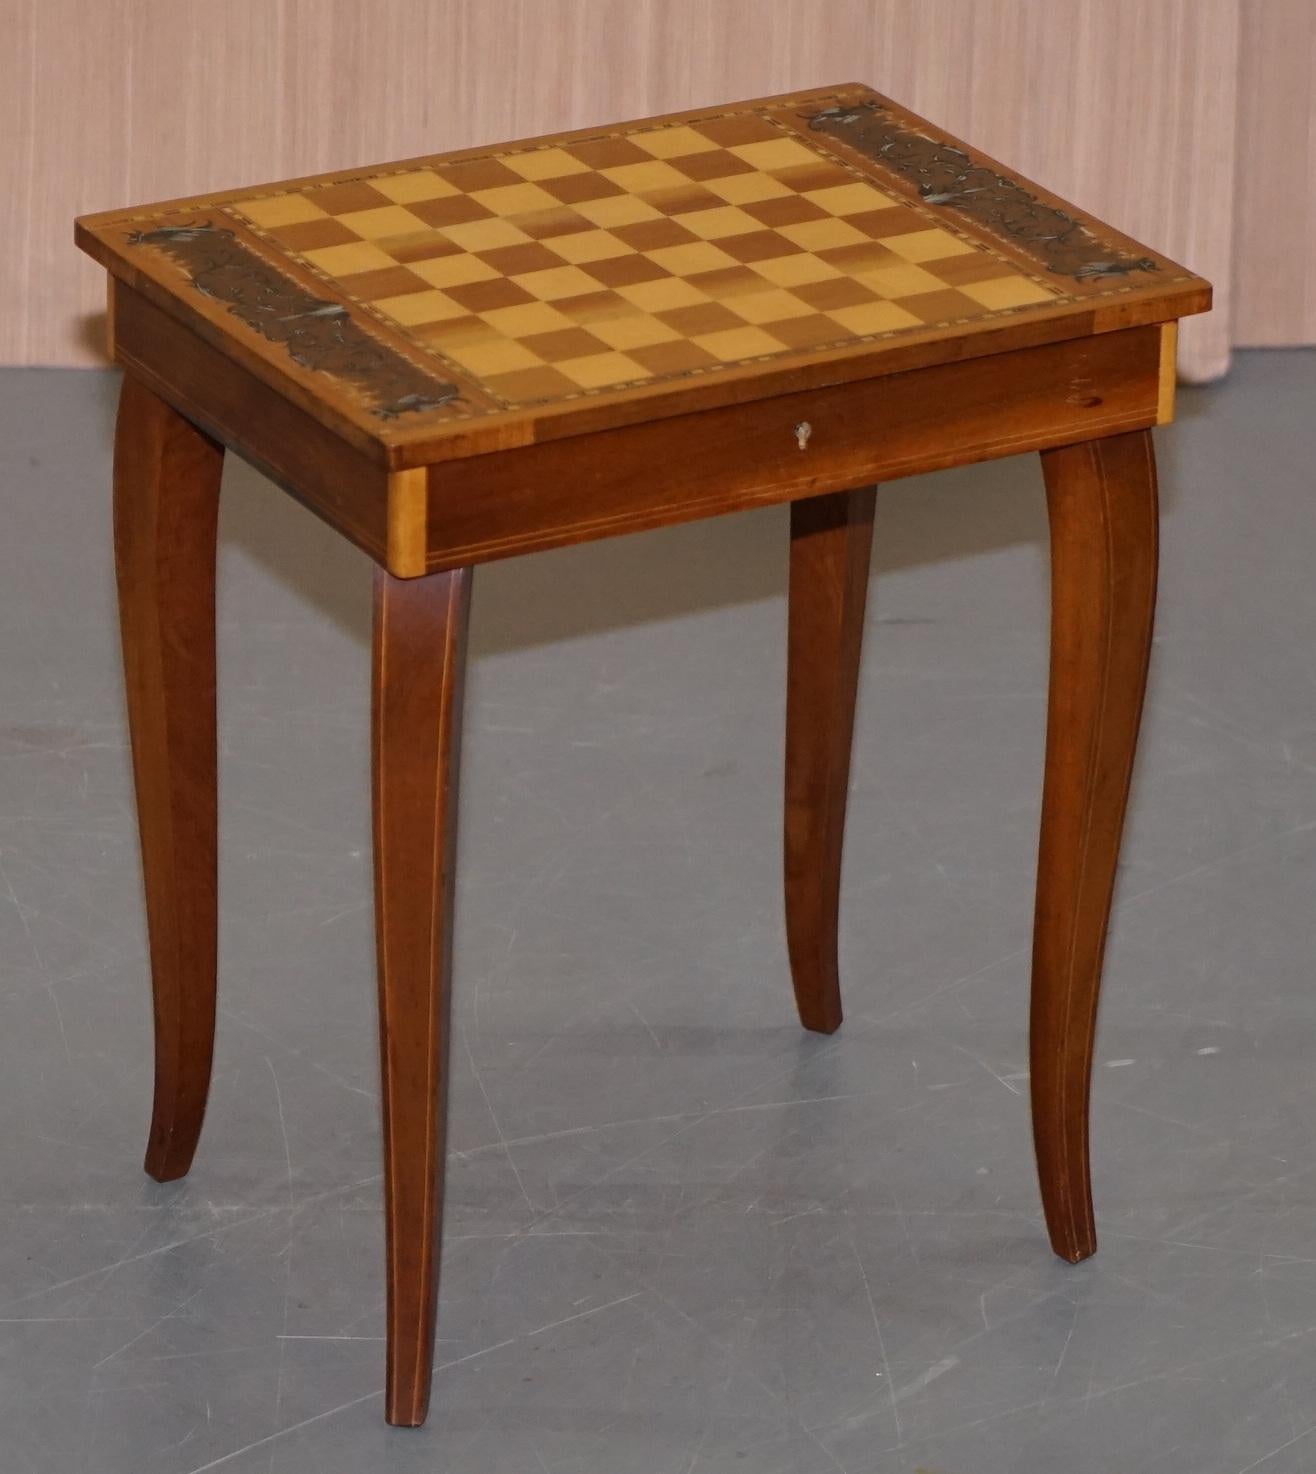 Nous sommes ravis de proposer à la vente cette charmante petite table de jeux d'échecs et de backgammon avec ses pièces d'origine

Une table d'appoint très décorative:: avec un tiroir de grande taille pour ranger les pièces de jeux et bien sûr la